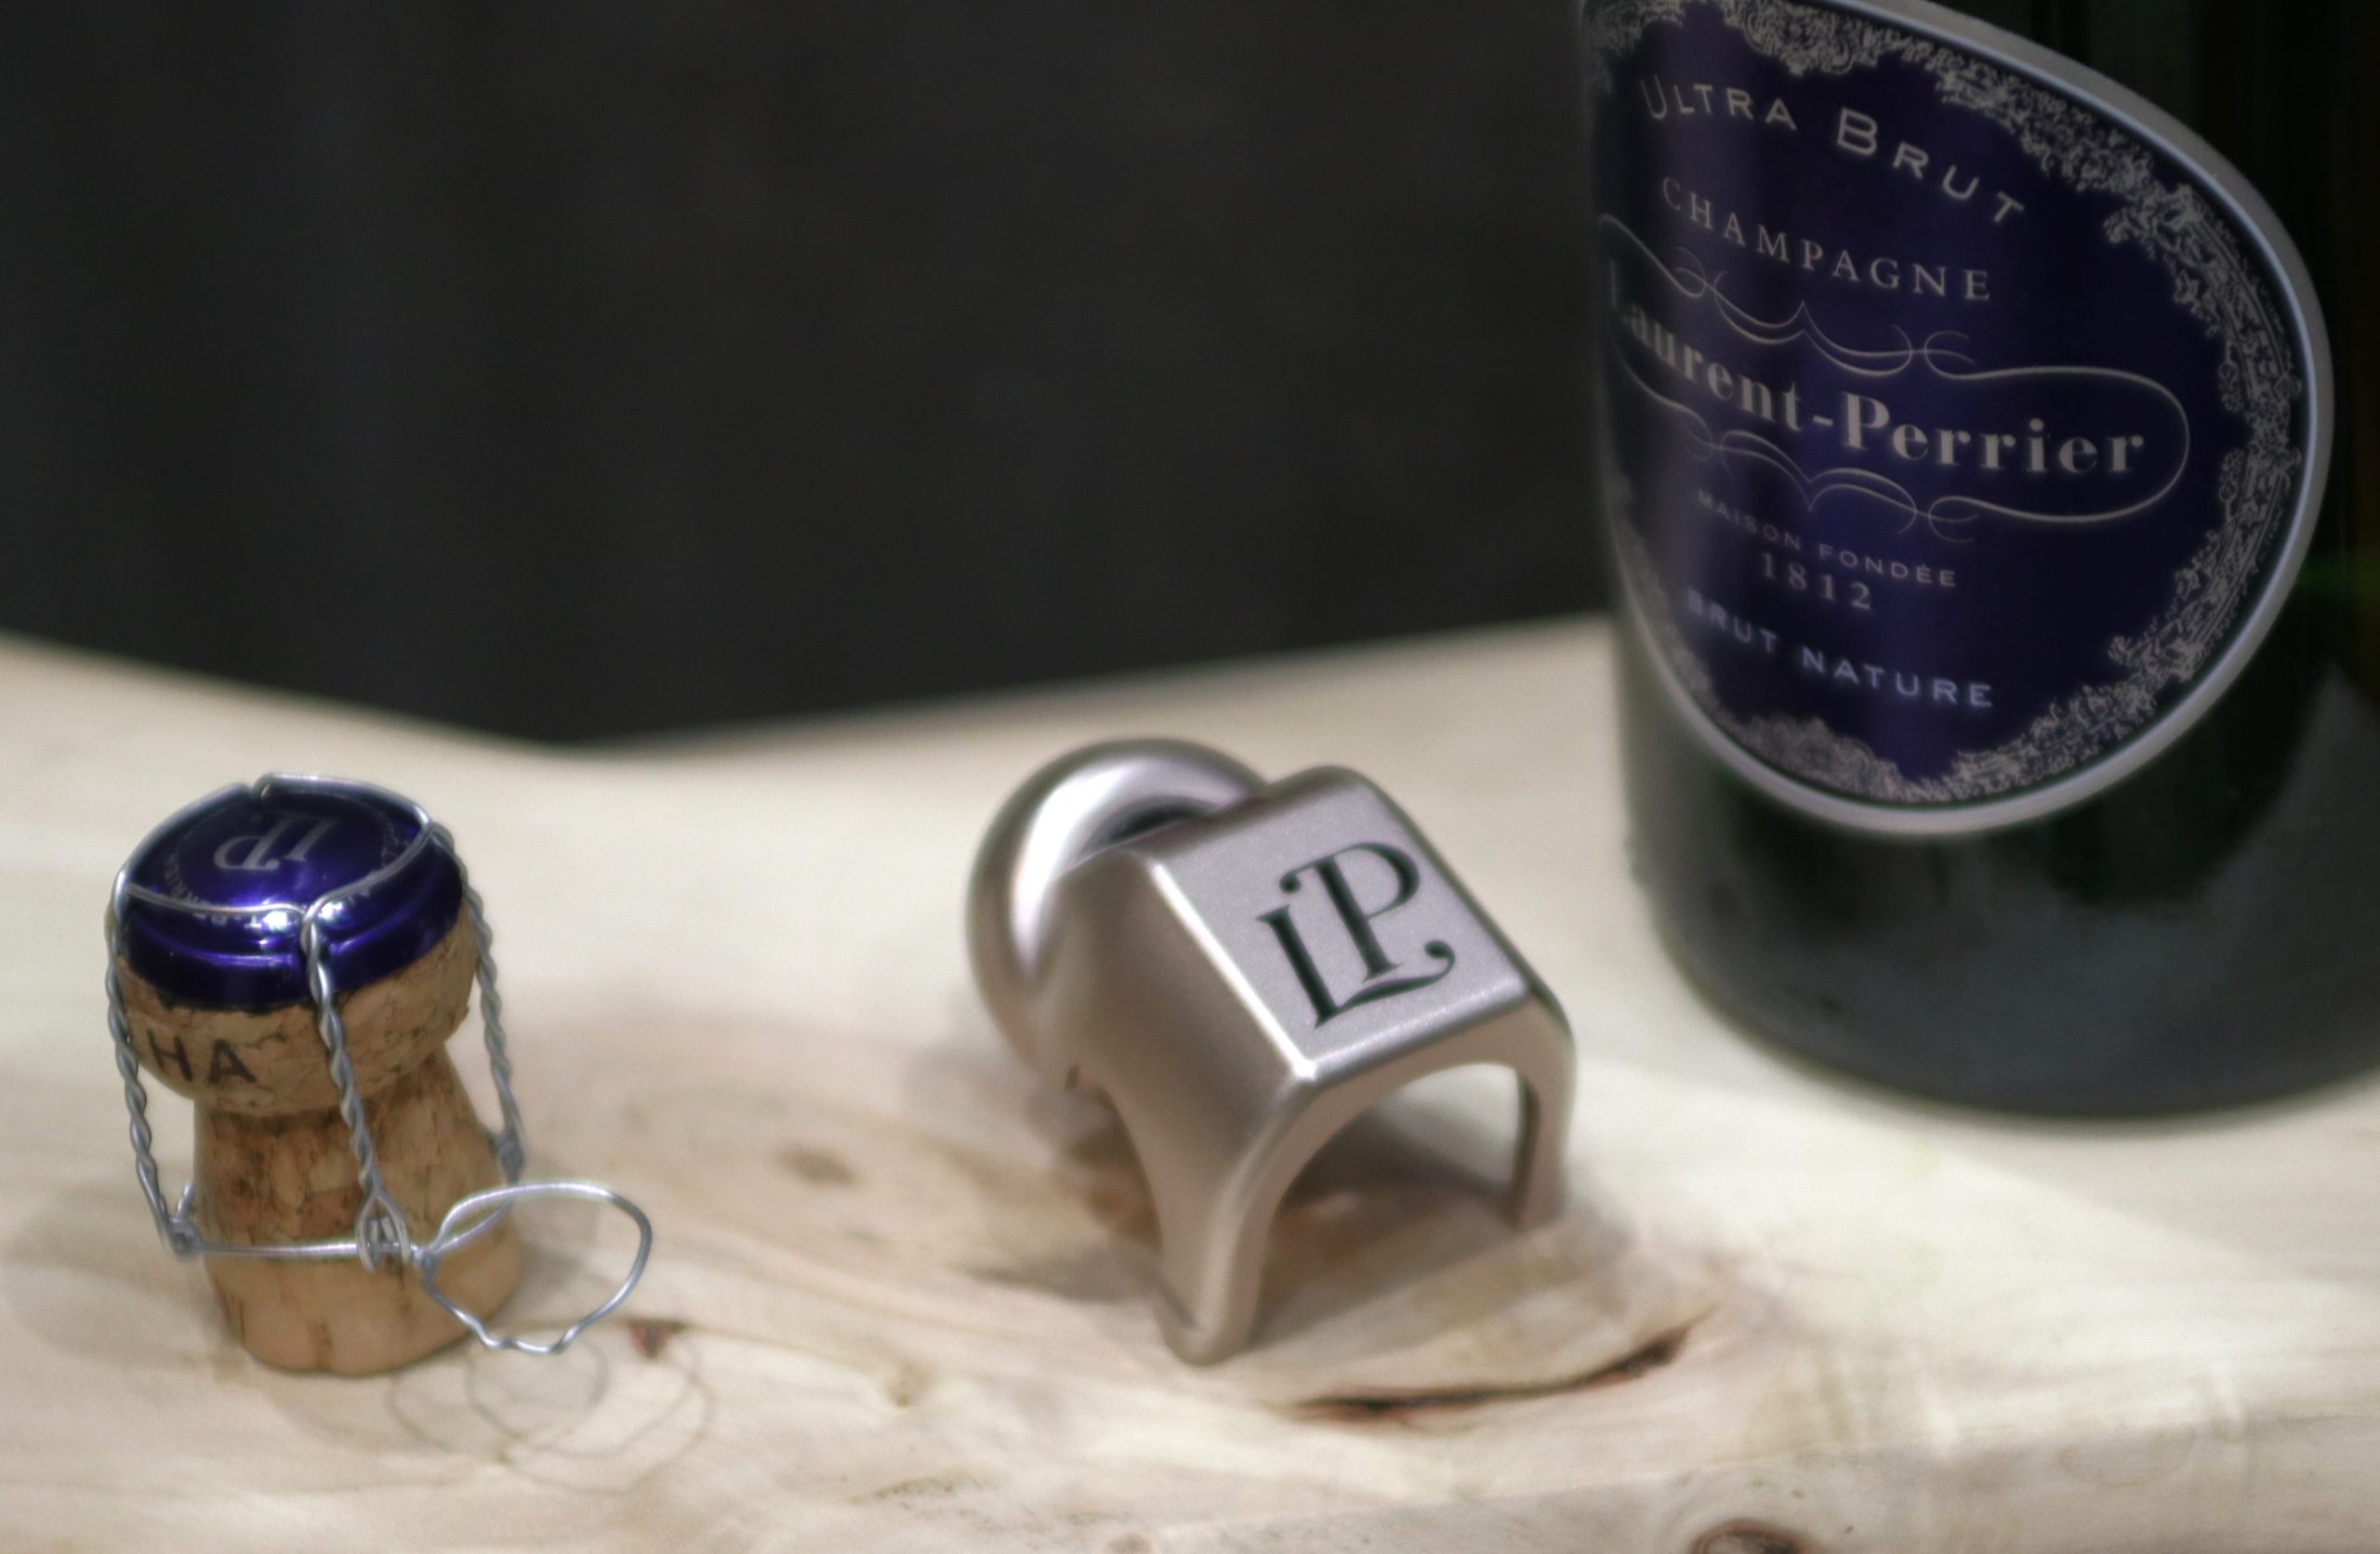 SOLD / ELADVA – Champagne Laurent-Perrier 3 db palackzáró díszdugó – 23.700.-Ft